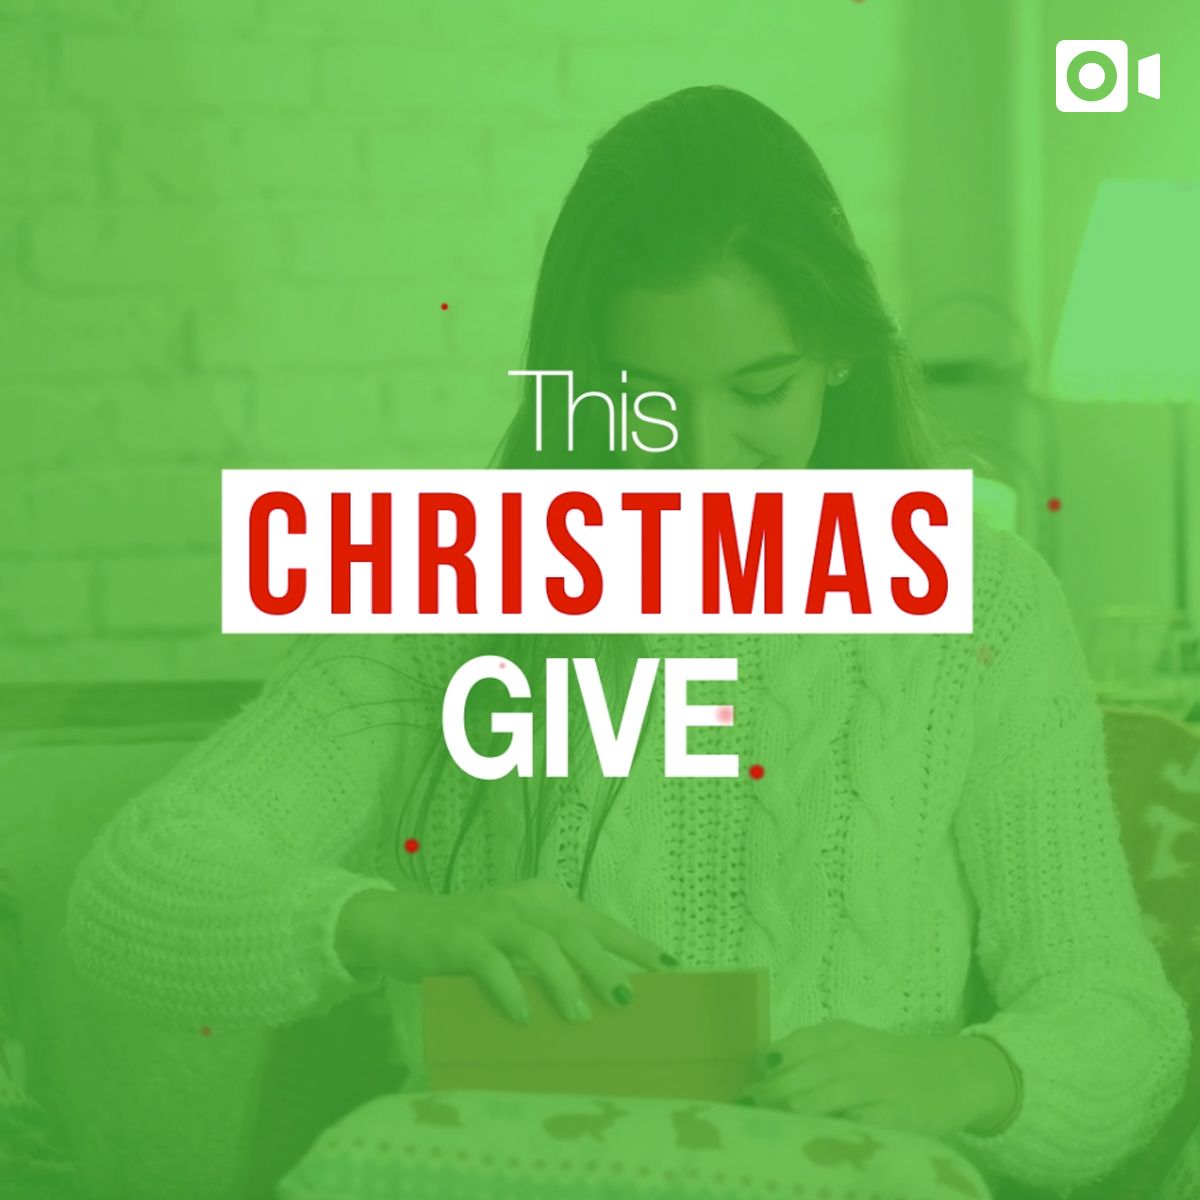 The Christmas Give